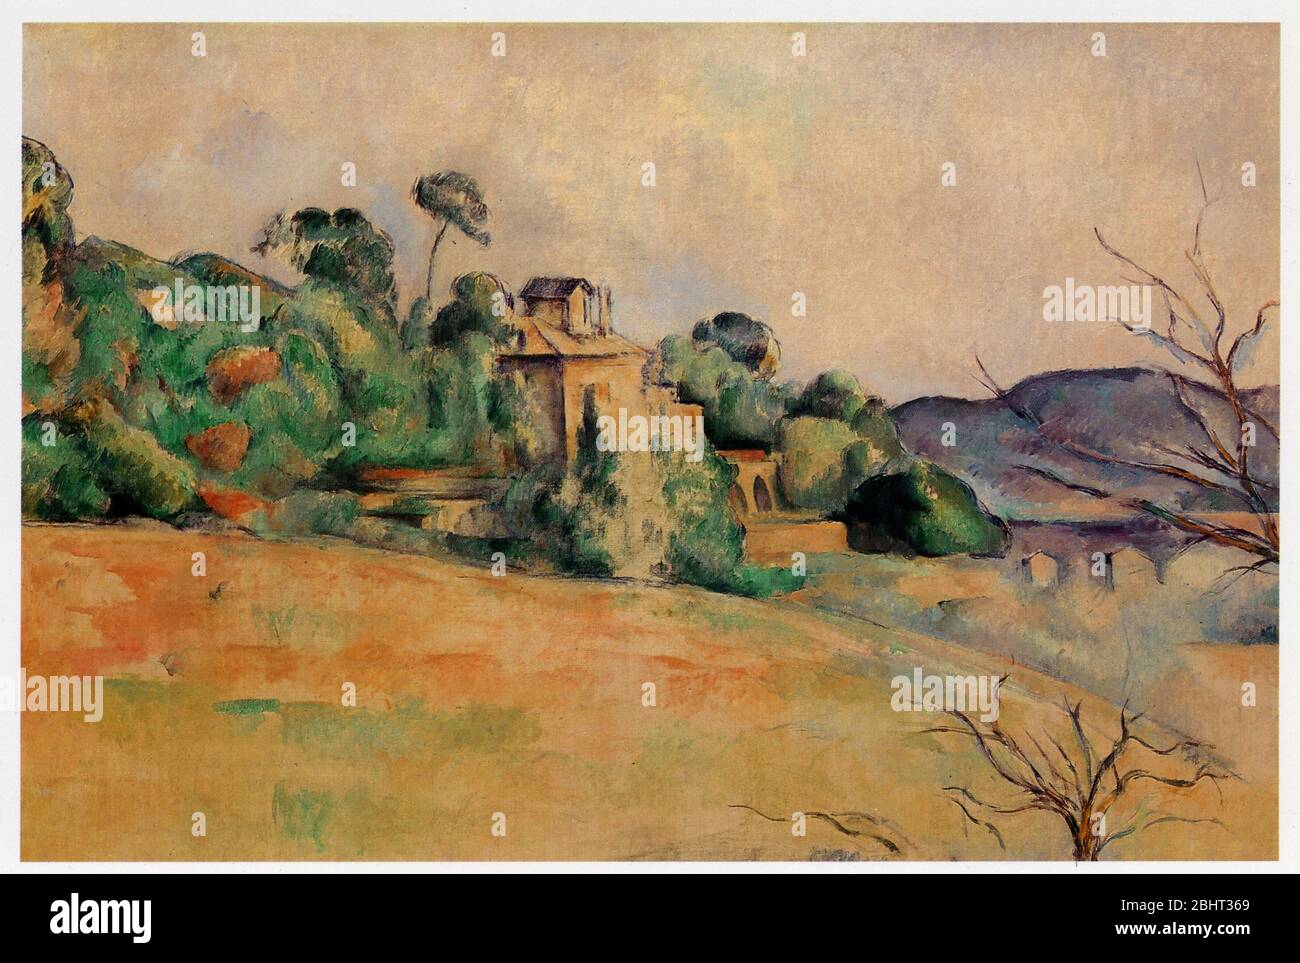 Paul Cézanne (1839-1906). Paysage du Midi. Huile sur toile. 1885-1887 Foto Stock